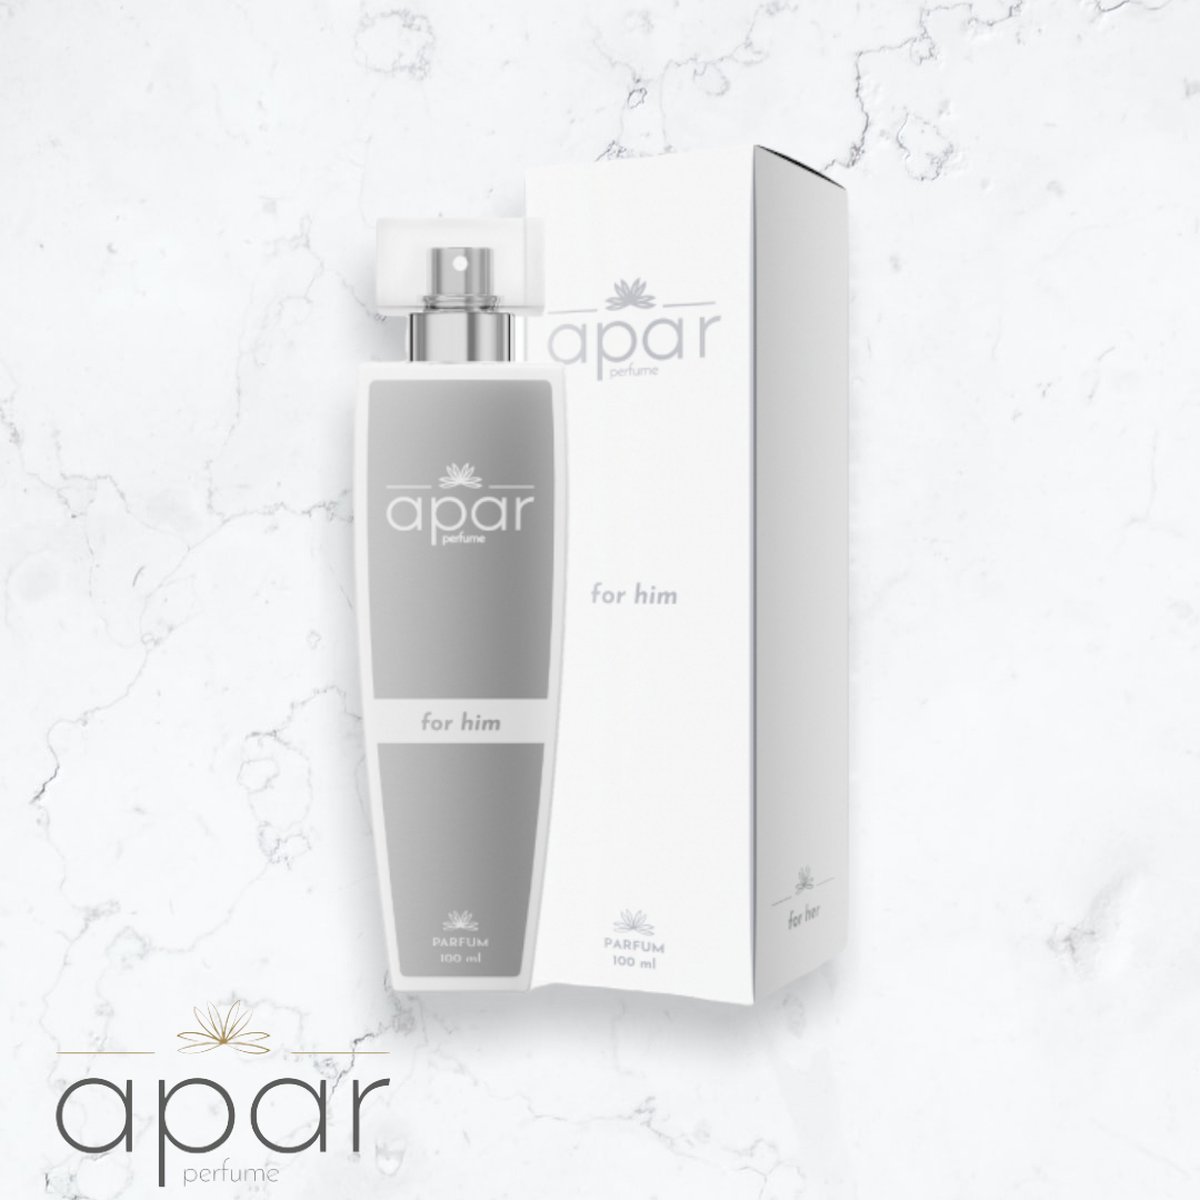 ❤Dure merk geuren voor een eerlijke prijs❤APAR Parfum EDP - 50ml - Nummer H811 Premium -